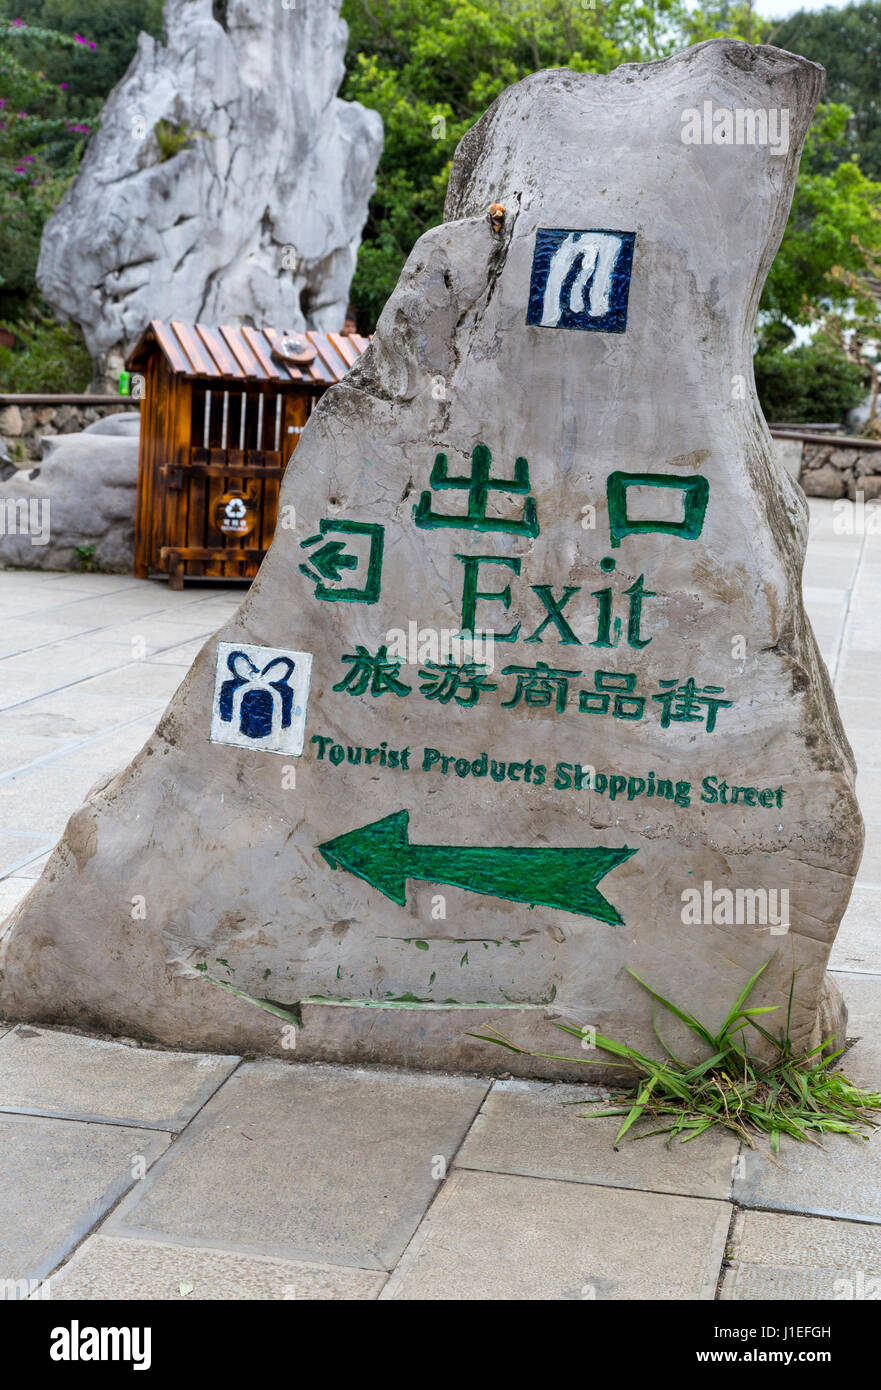 La province du Guizhou, en Chine. Jardin de bonsaïs, les fruits jaunes (arbre) Huangguoshu Waterfall Scenic Area. Directions pour des boutiques de cadeaux et de souvenirs. Banque D'Images